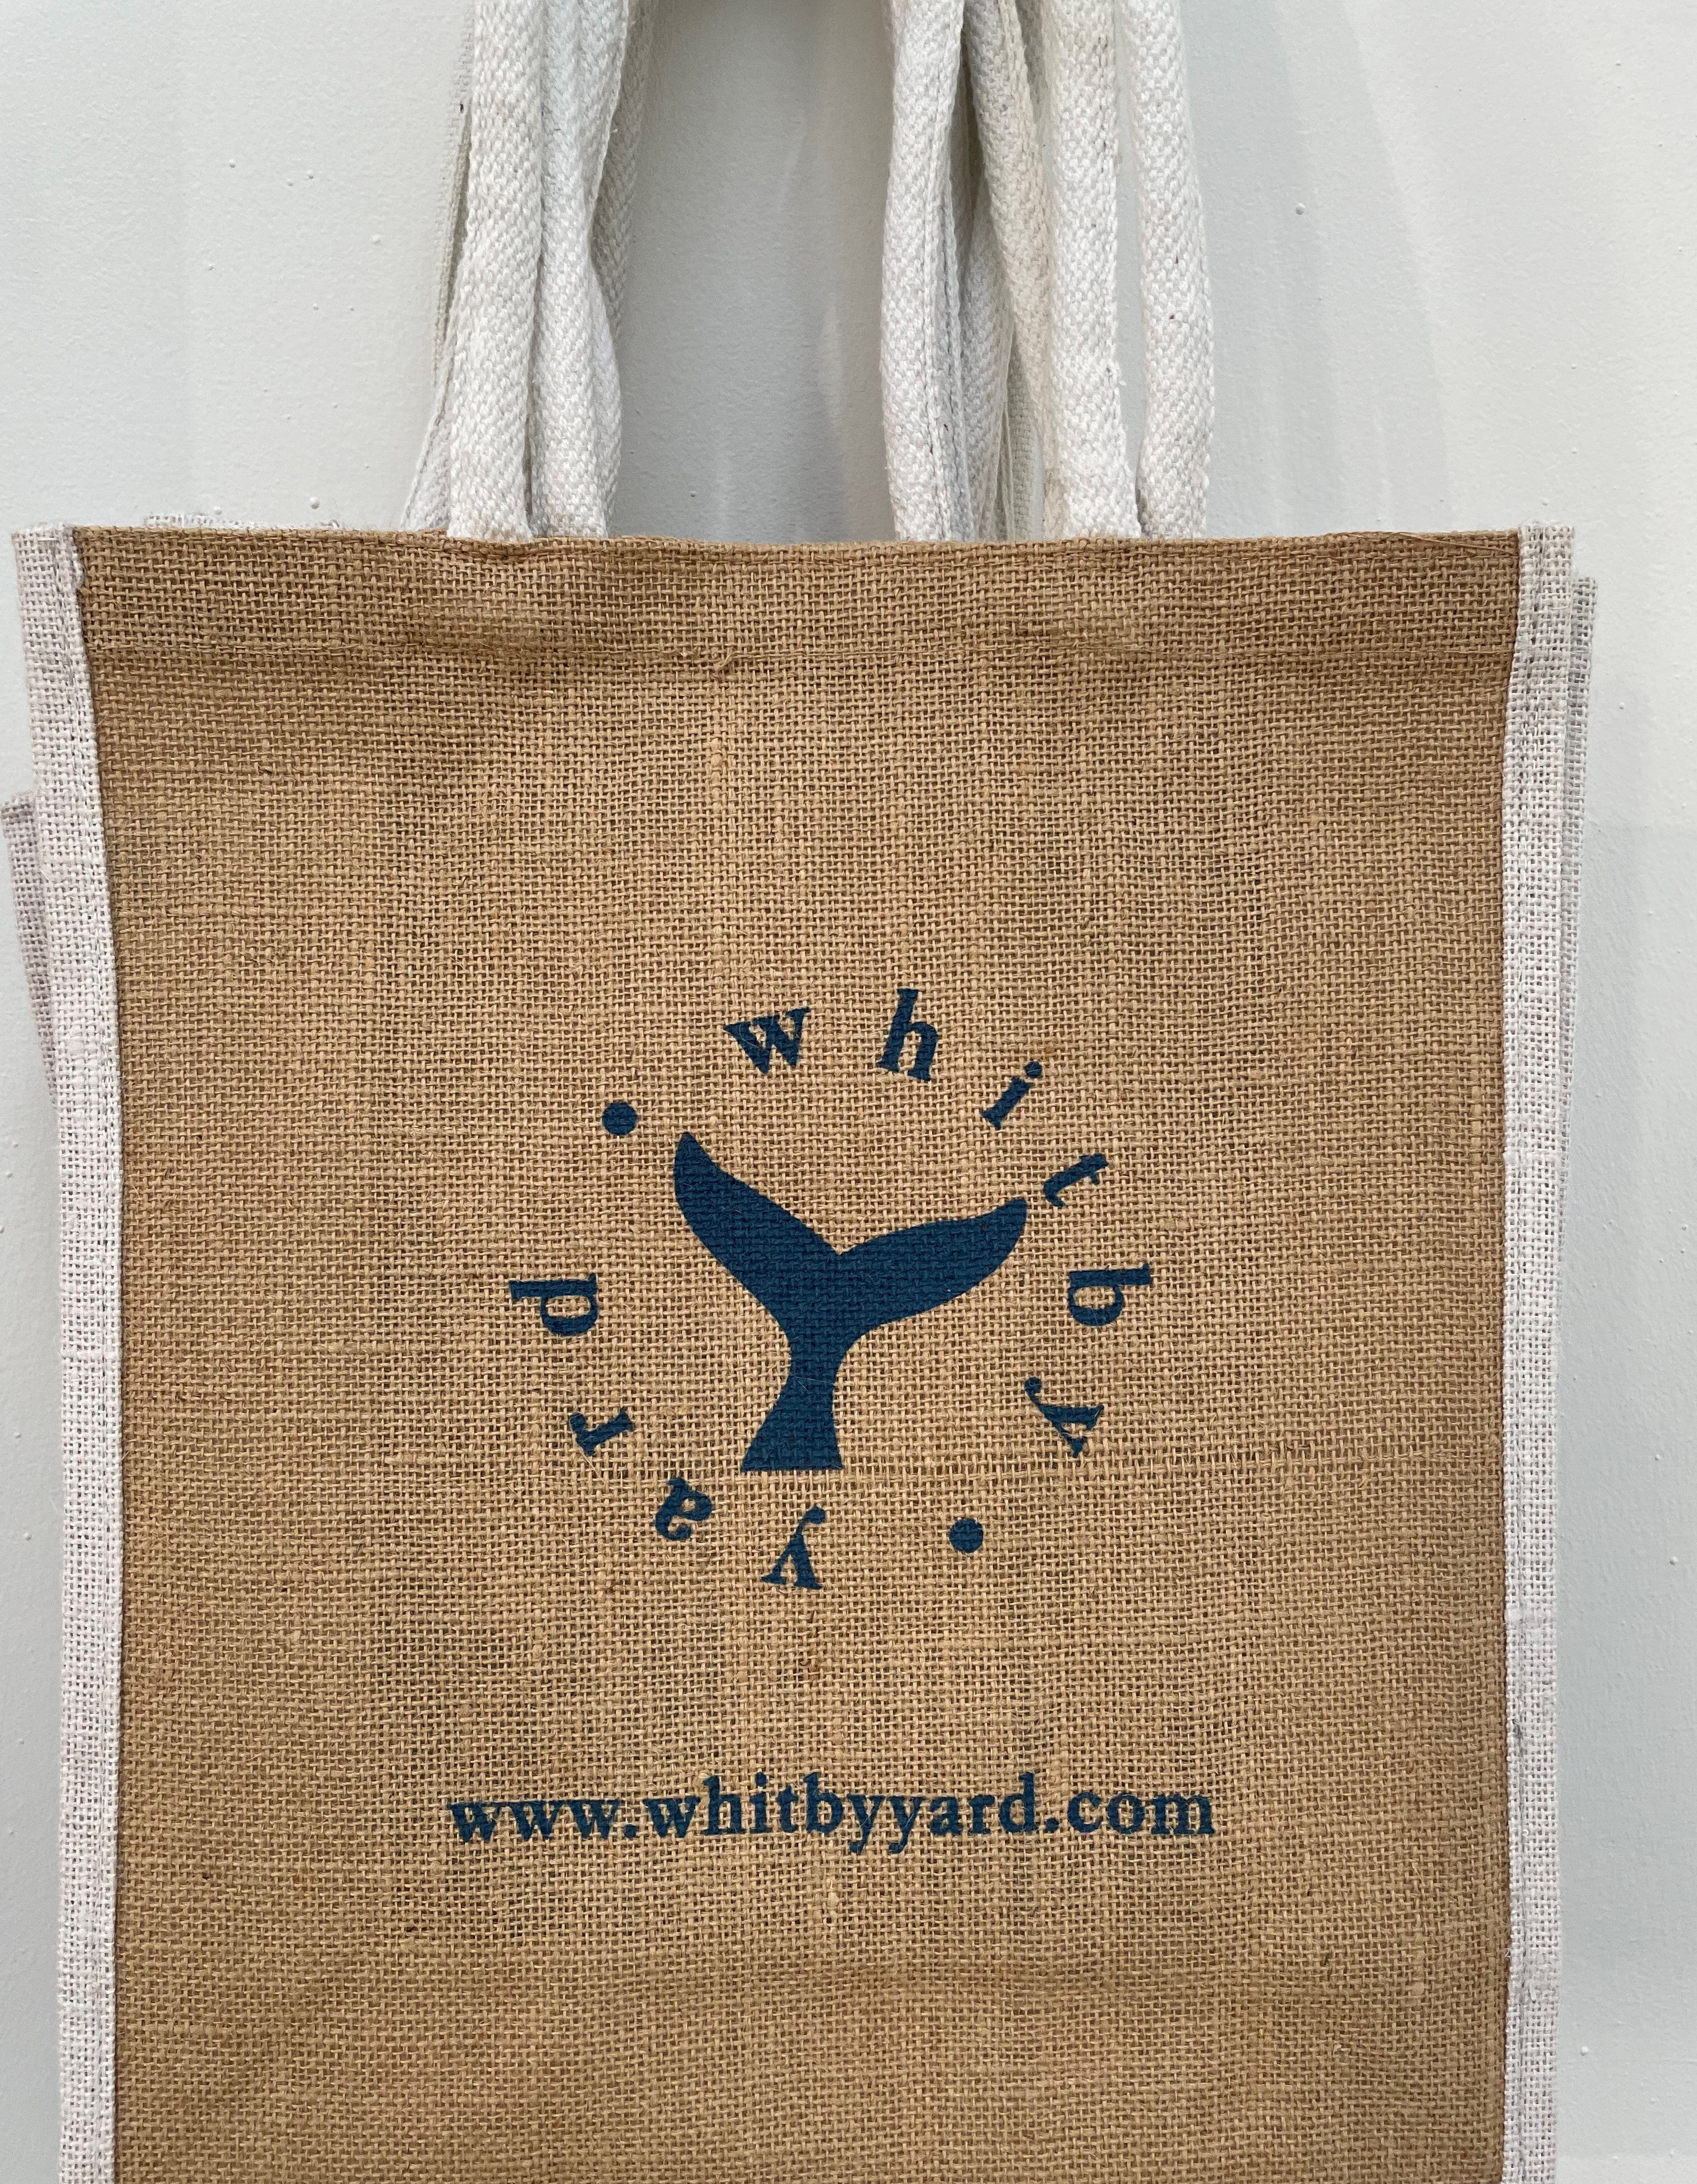 Whitby Yard Jute Shopping Bag